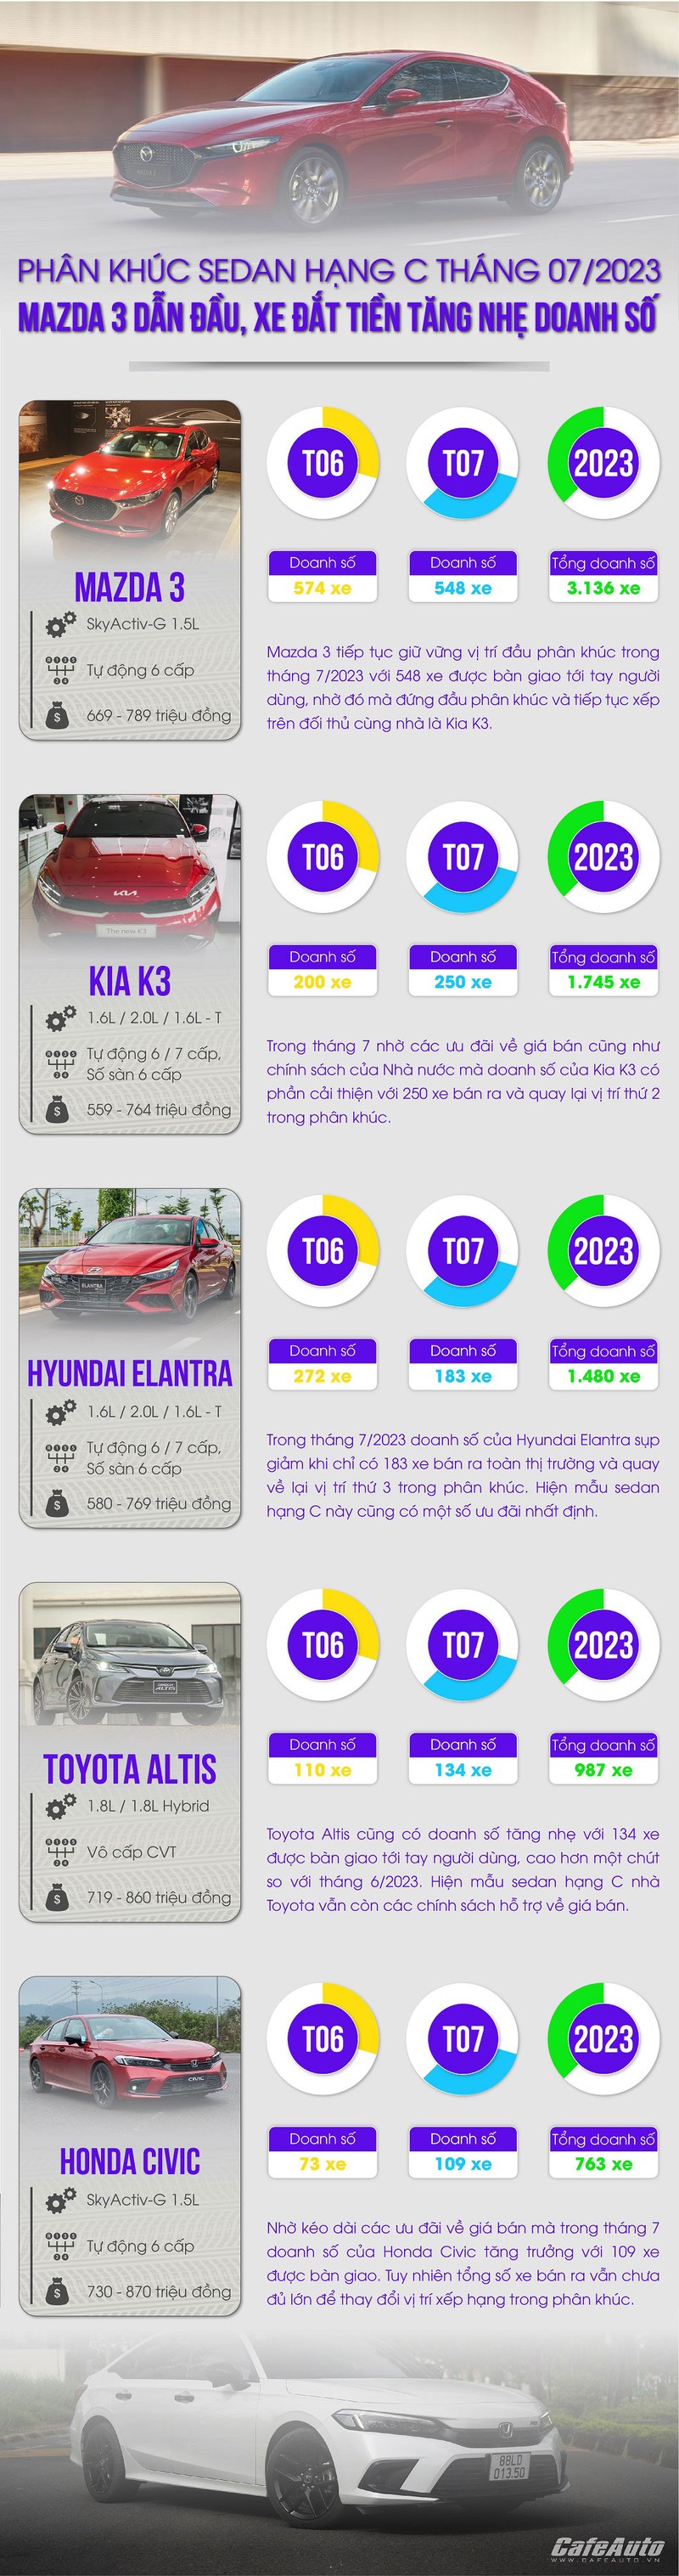 Mazda3 vuot mat Toyota Altis dan dau phan khuc sedan hang C thang 7/2023